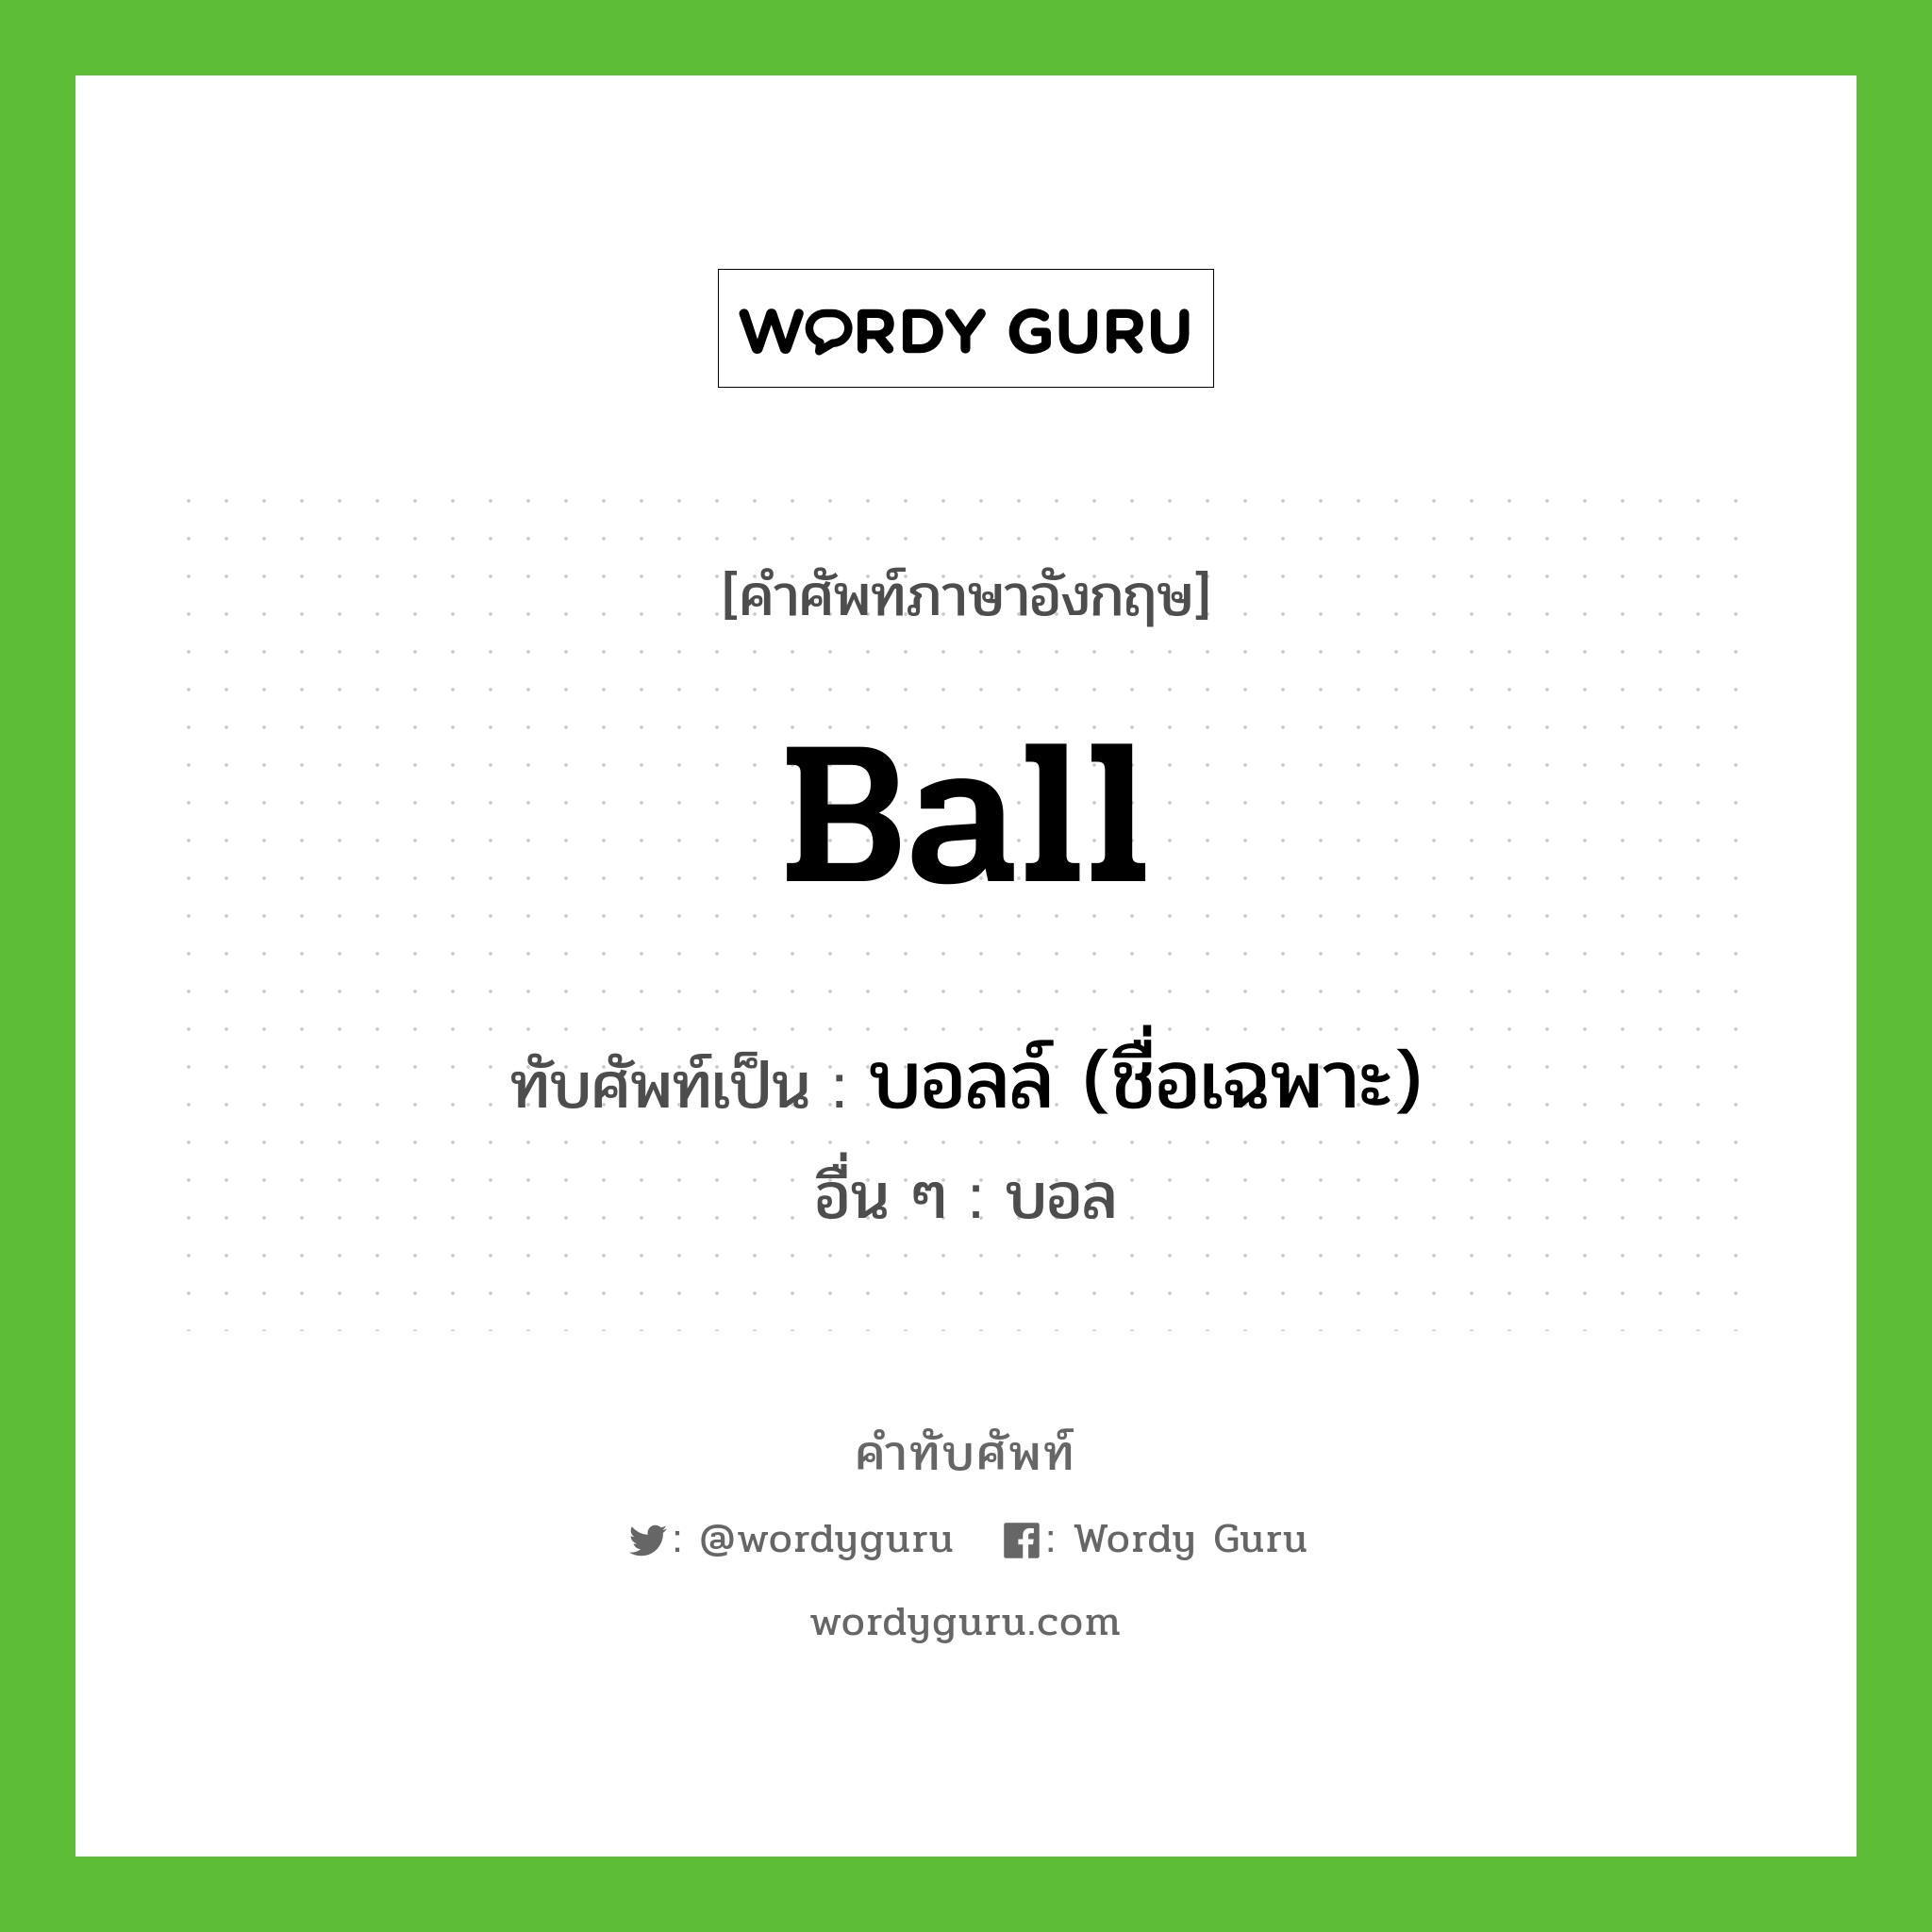 บอลล์ (ชื่อเฉพาะ) เขียนอย่างไร?, คำศัพท์ภาษาอังกฤษ บอลล์ (ชื่อเฉพาะ) ทับศัพท์เป็น Ball อื่น ๆ บอล